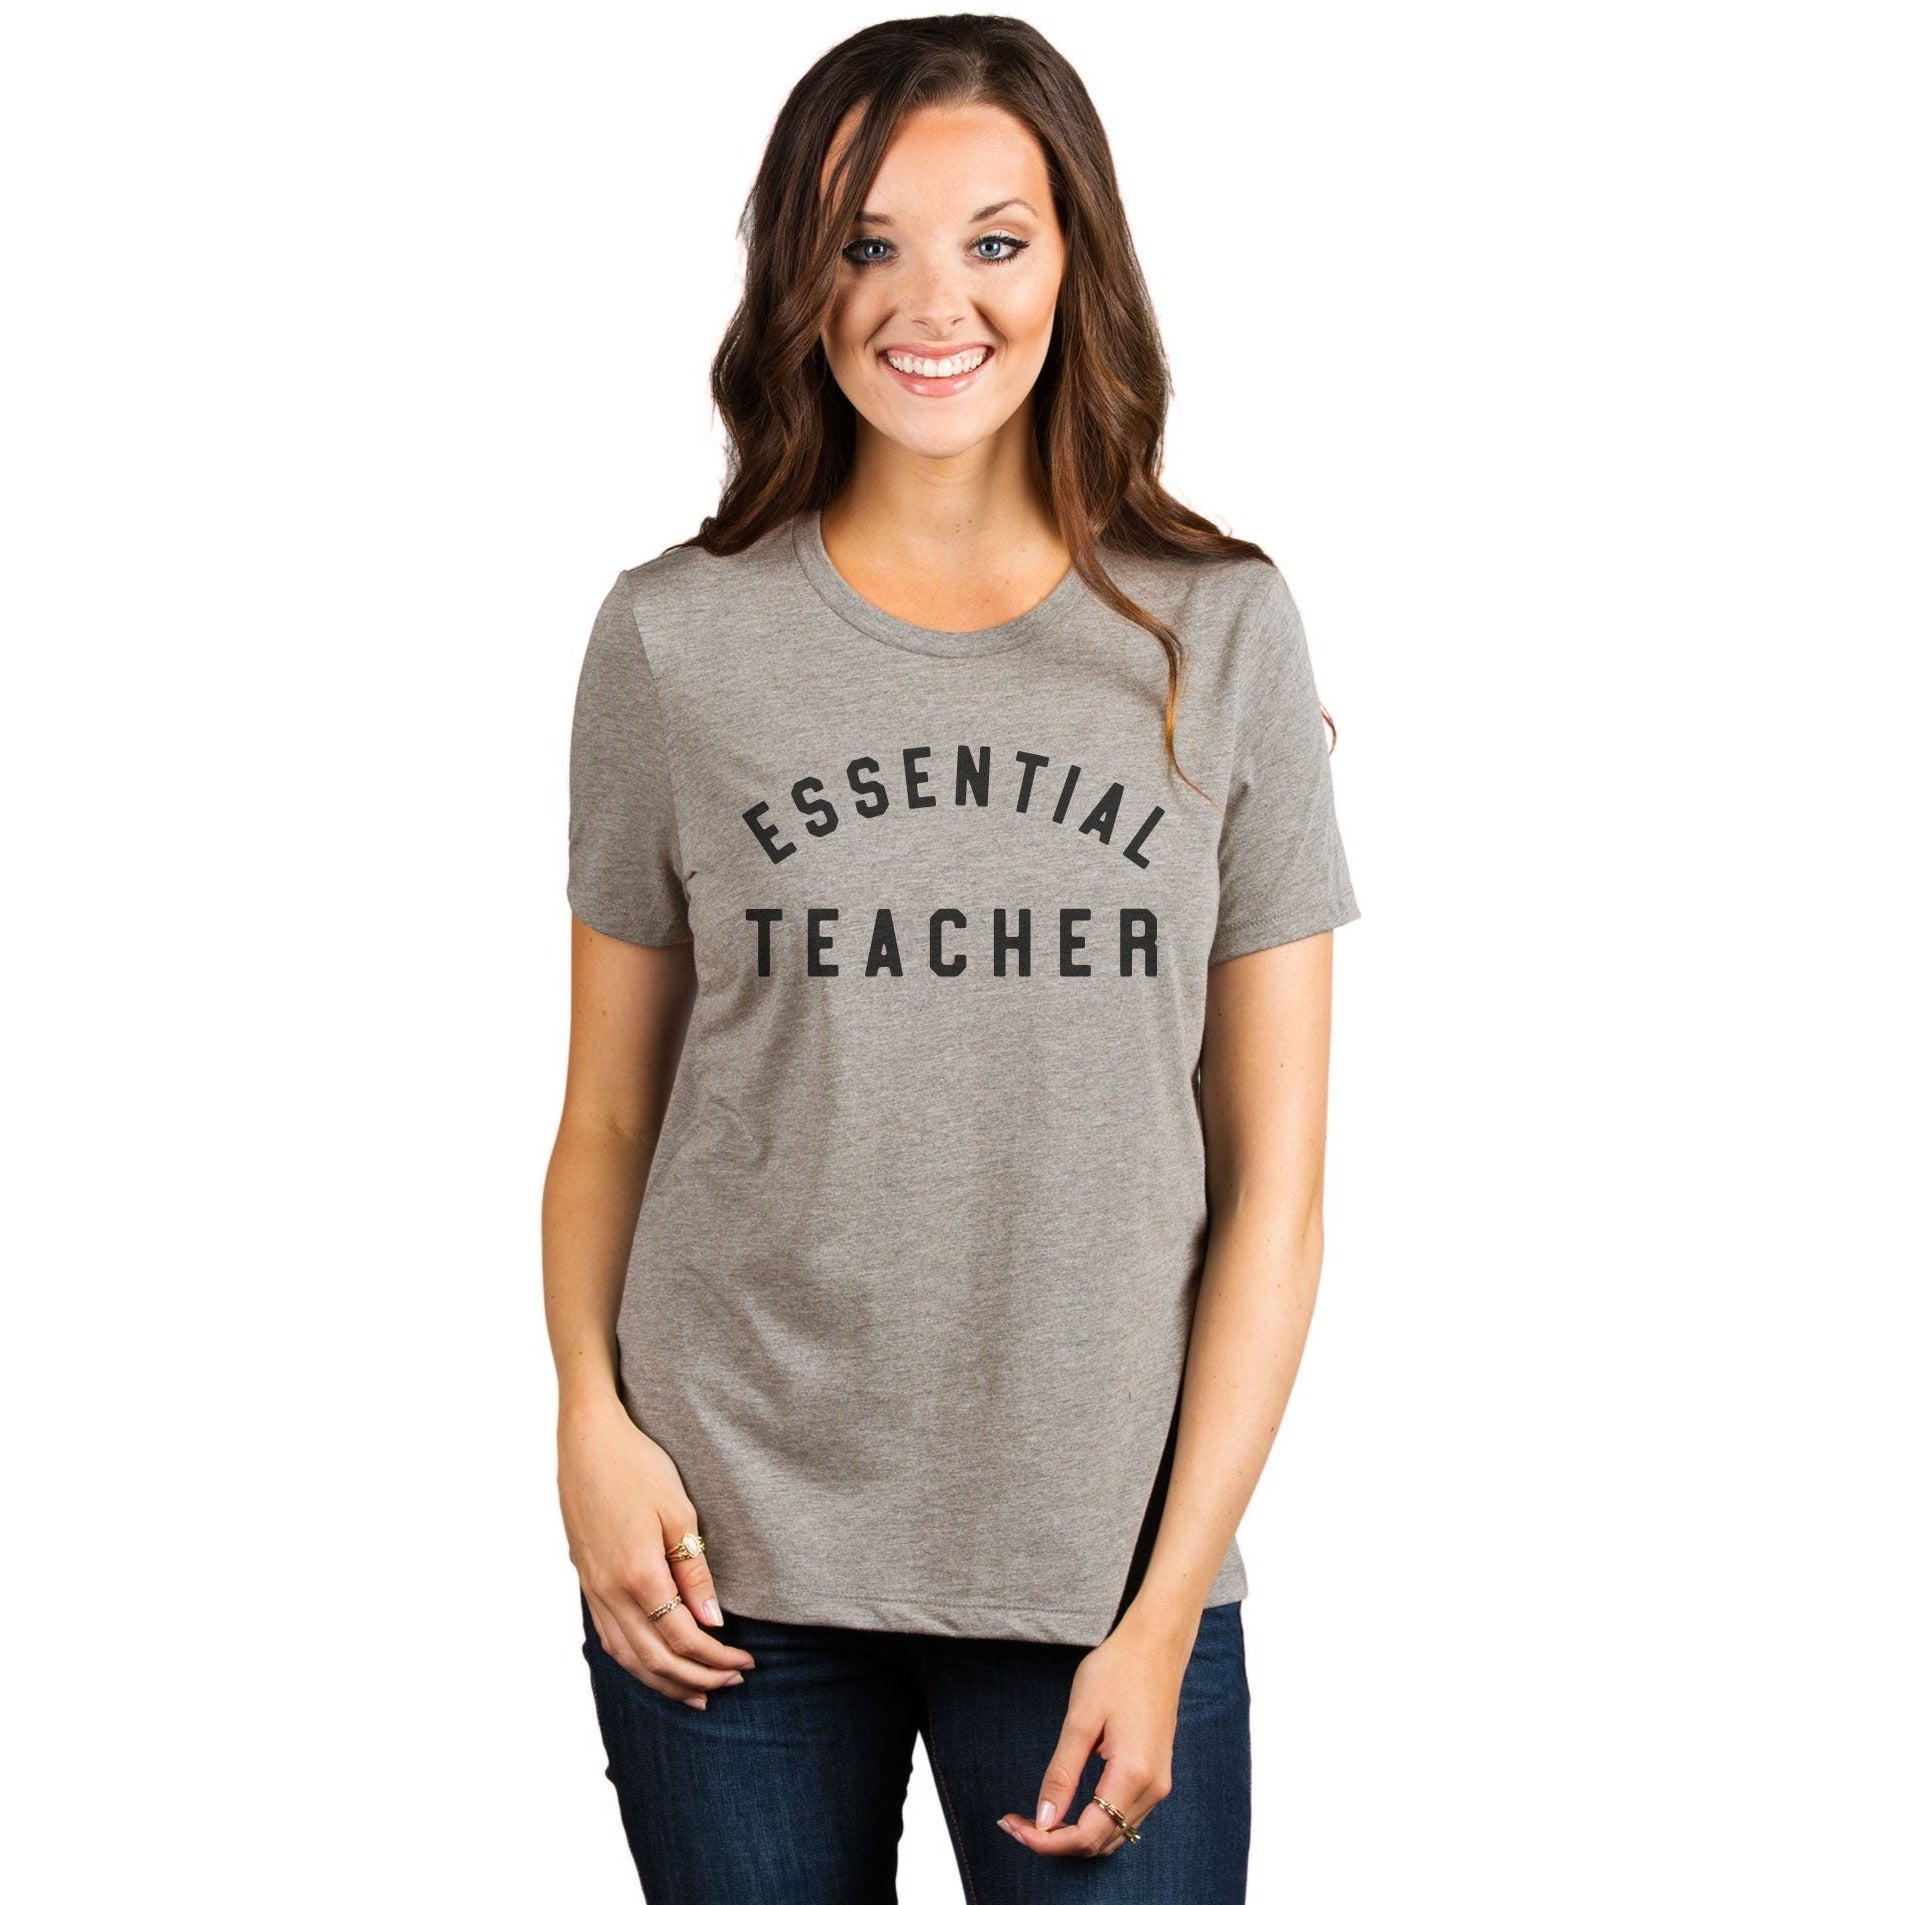 Essential Teacher Women's Relaxed Crewneck T-Shirt Top Tee Heather Tan Model
